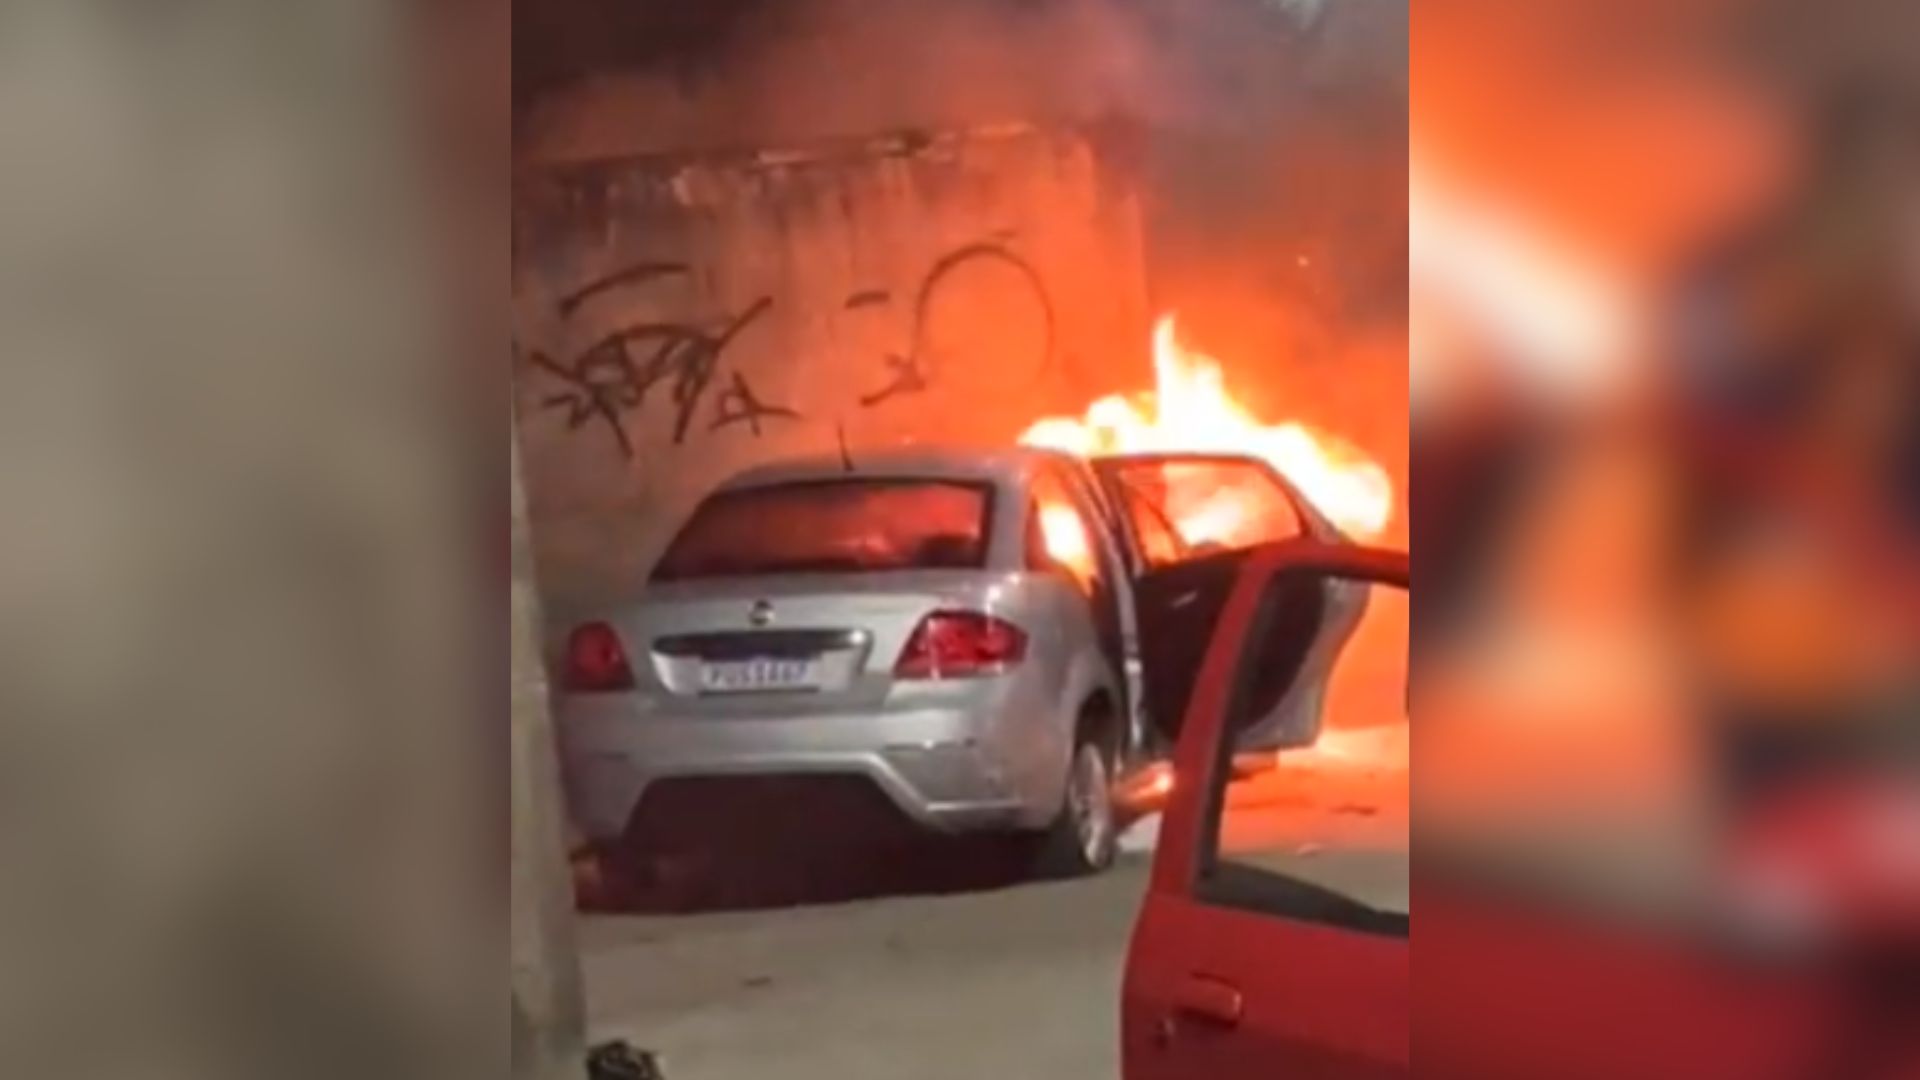 Imagens mostram o Fiat Linea em chamas, enquanto um adolescente de 15 anos está deitado no chão; menor é suspeito de ter participado do crime, mas foi liberado pela polícia